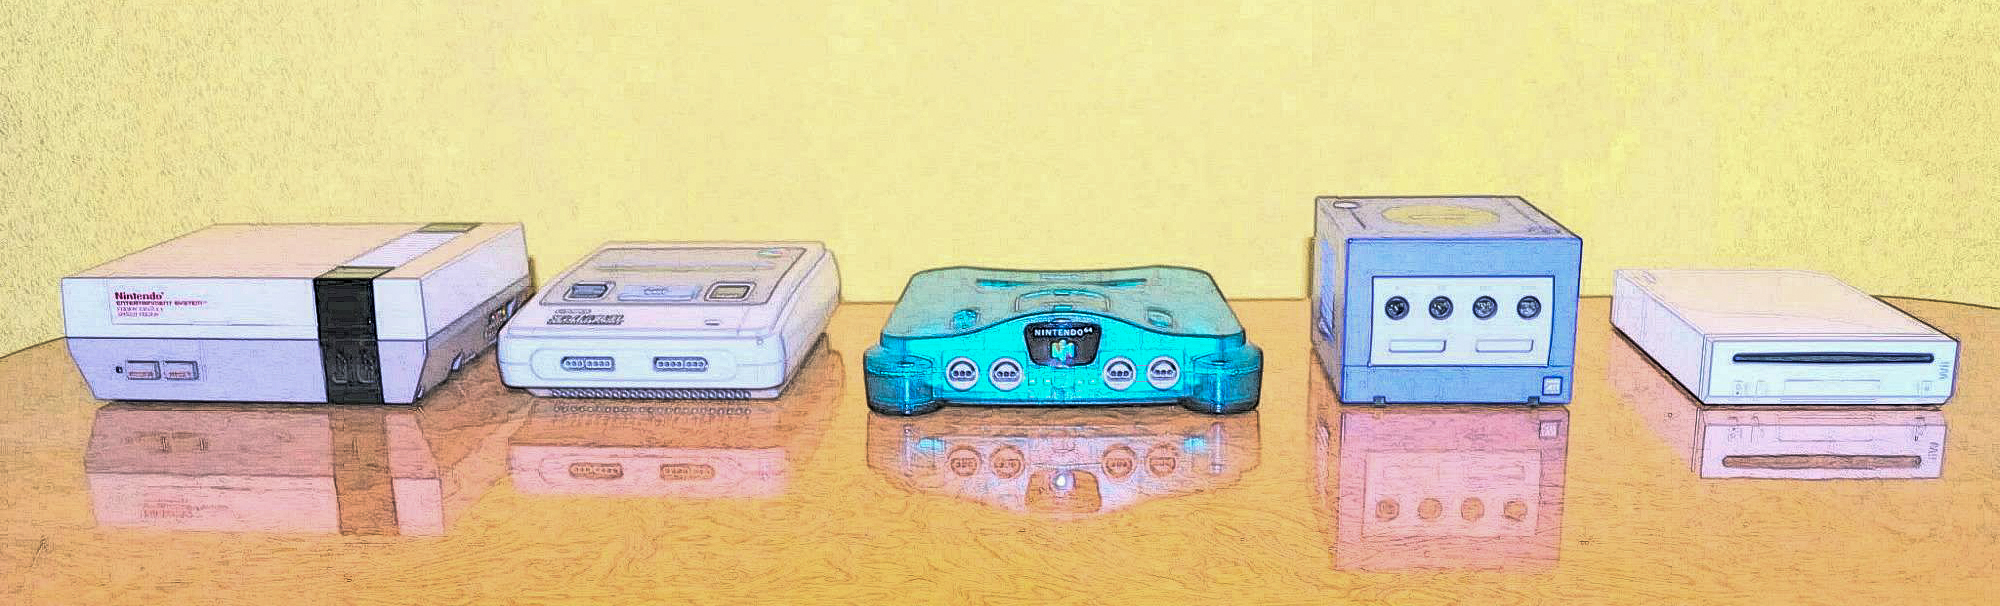 Nintendo evolution